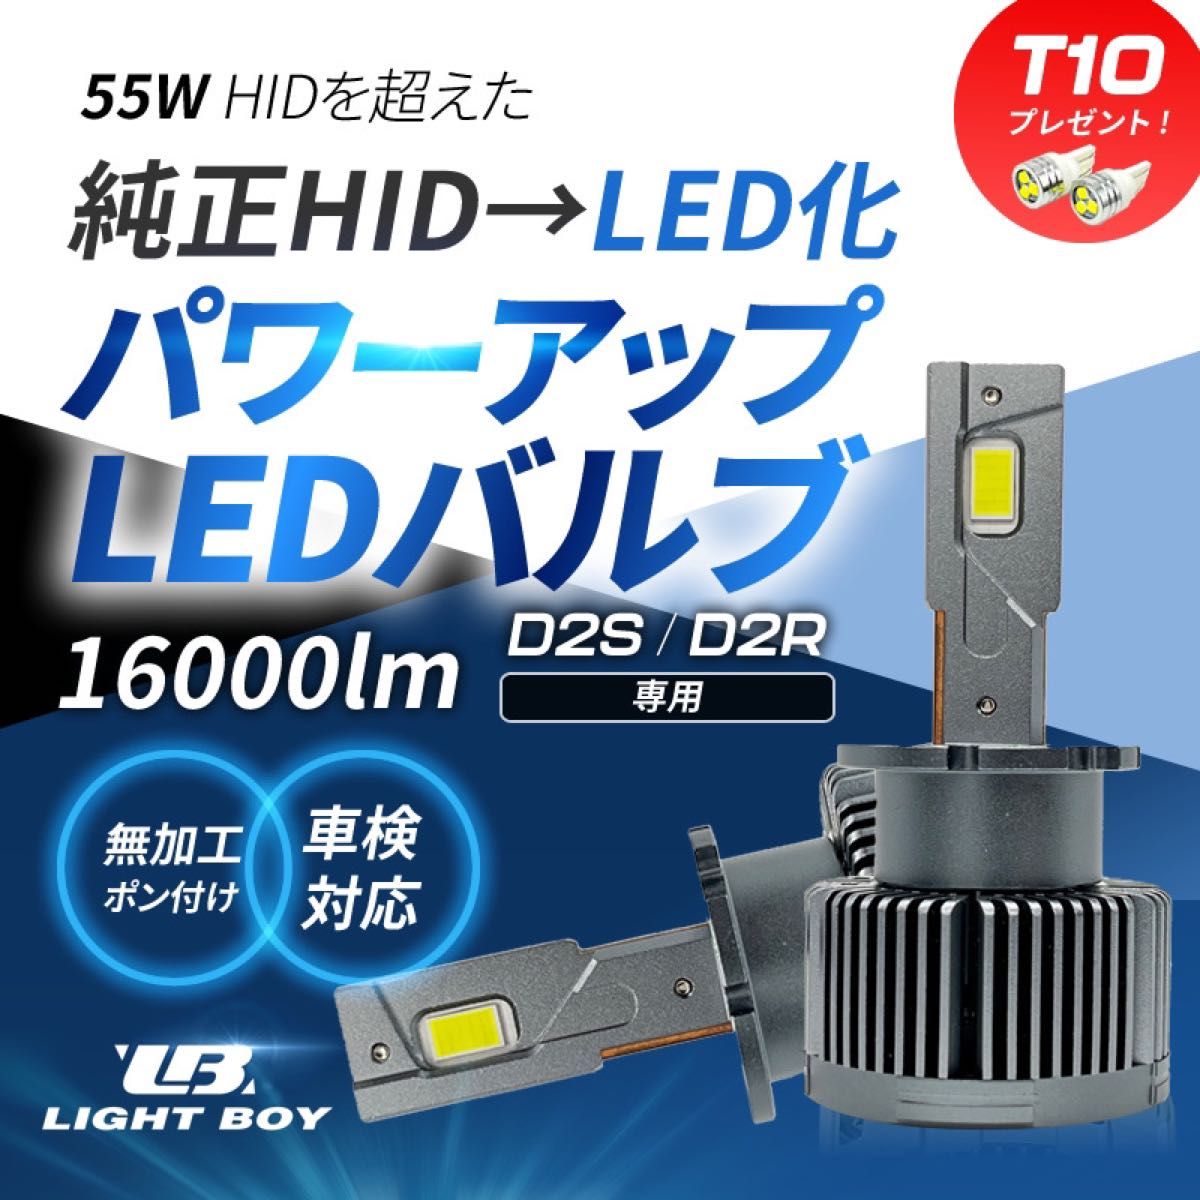 HIDより明るい○ オデッセイ / RB1 / RB2 D2S 光量アップ 純正 HID パワーアップ LEDヘッドライト